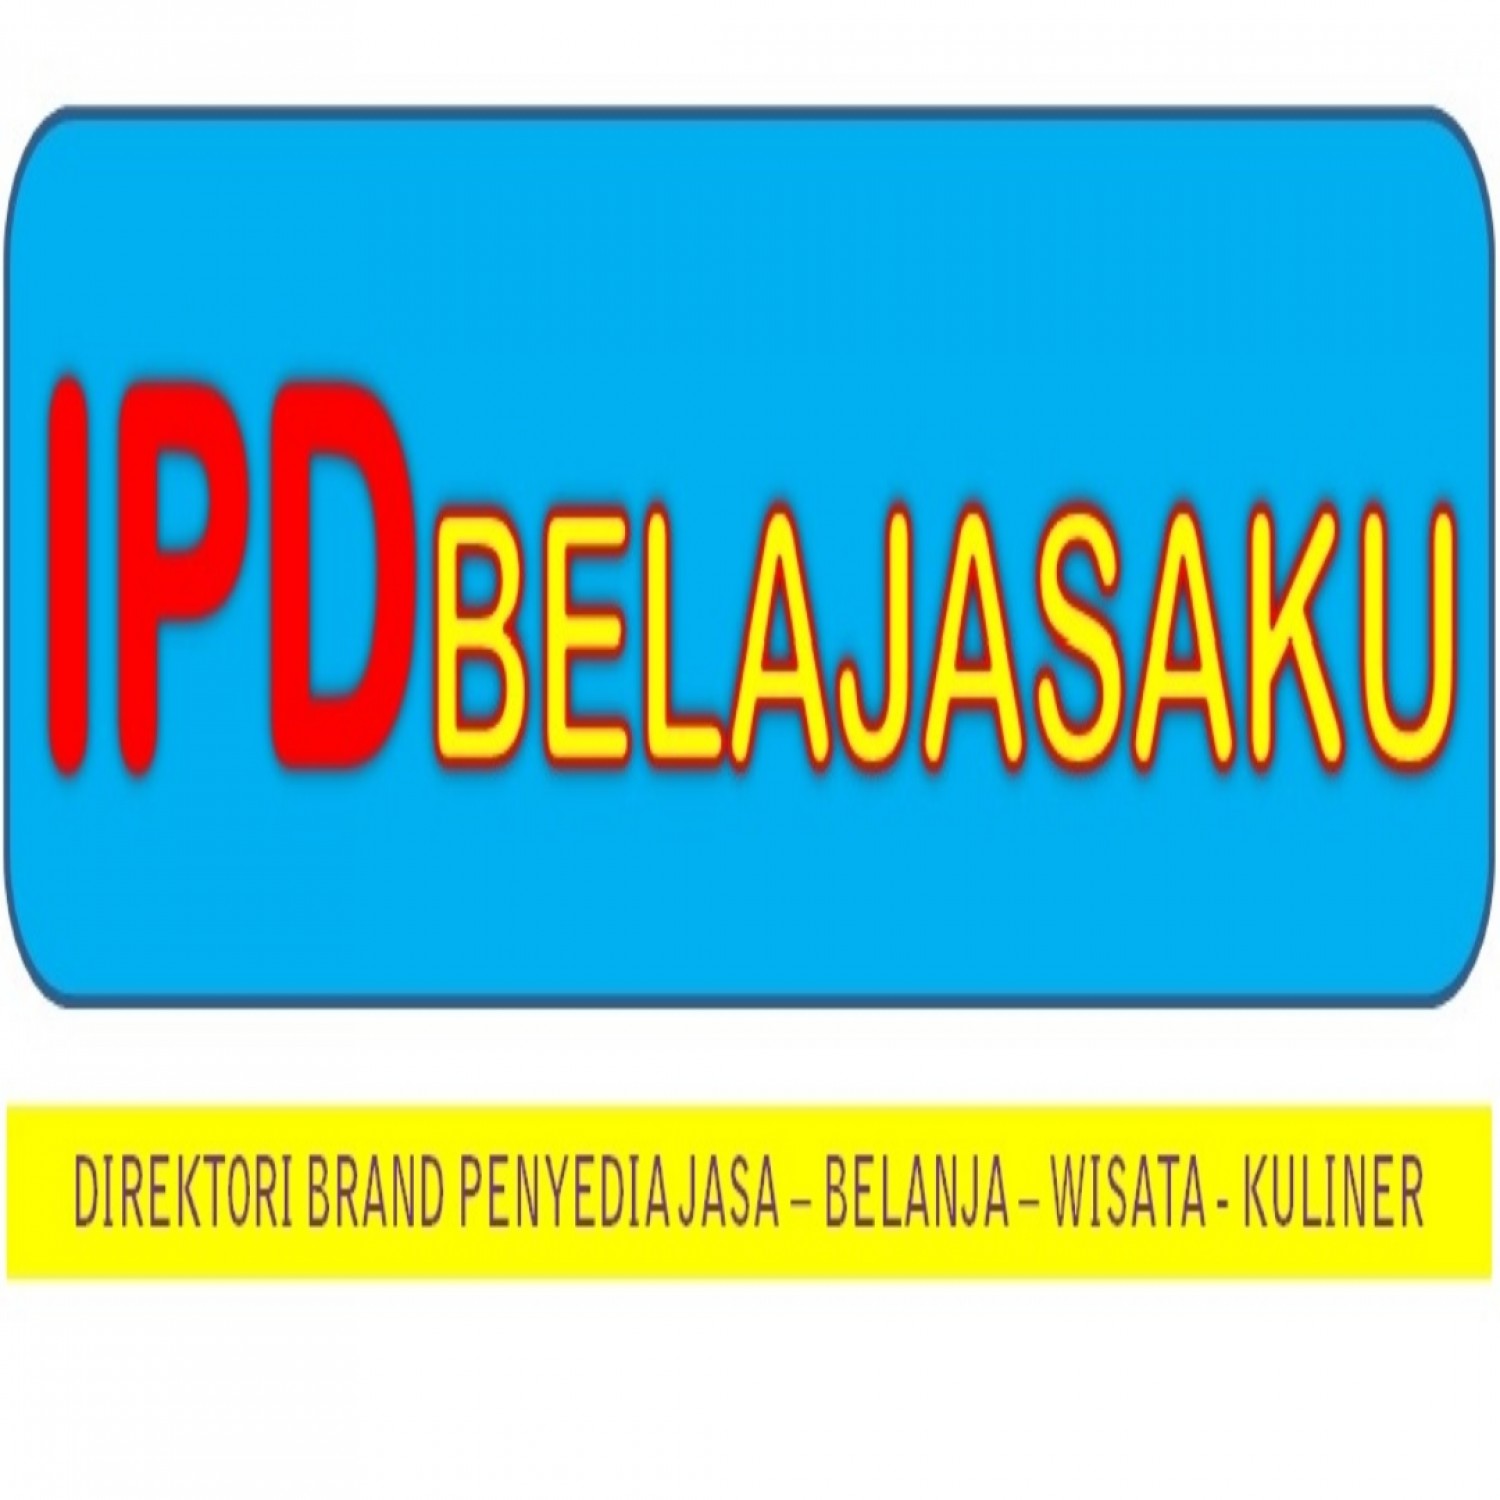 IPD Belajasaku